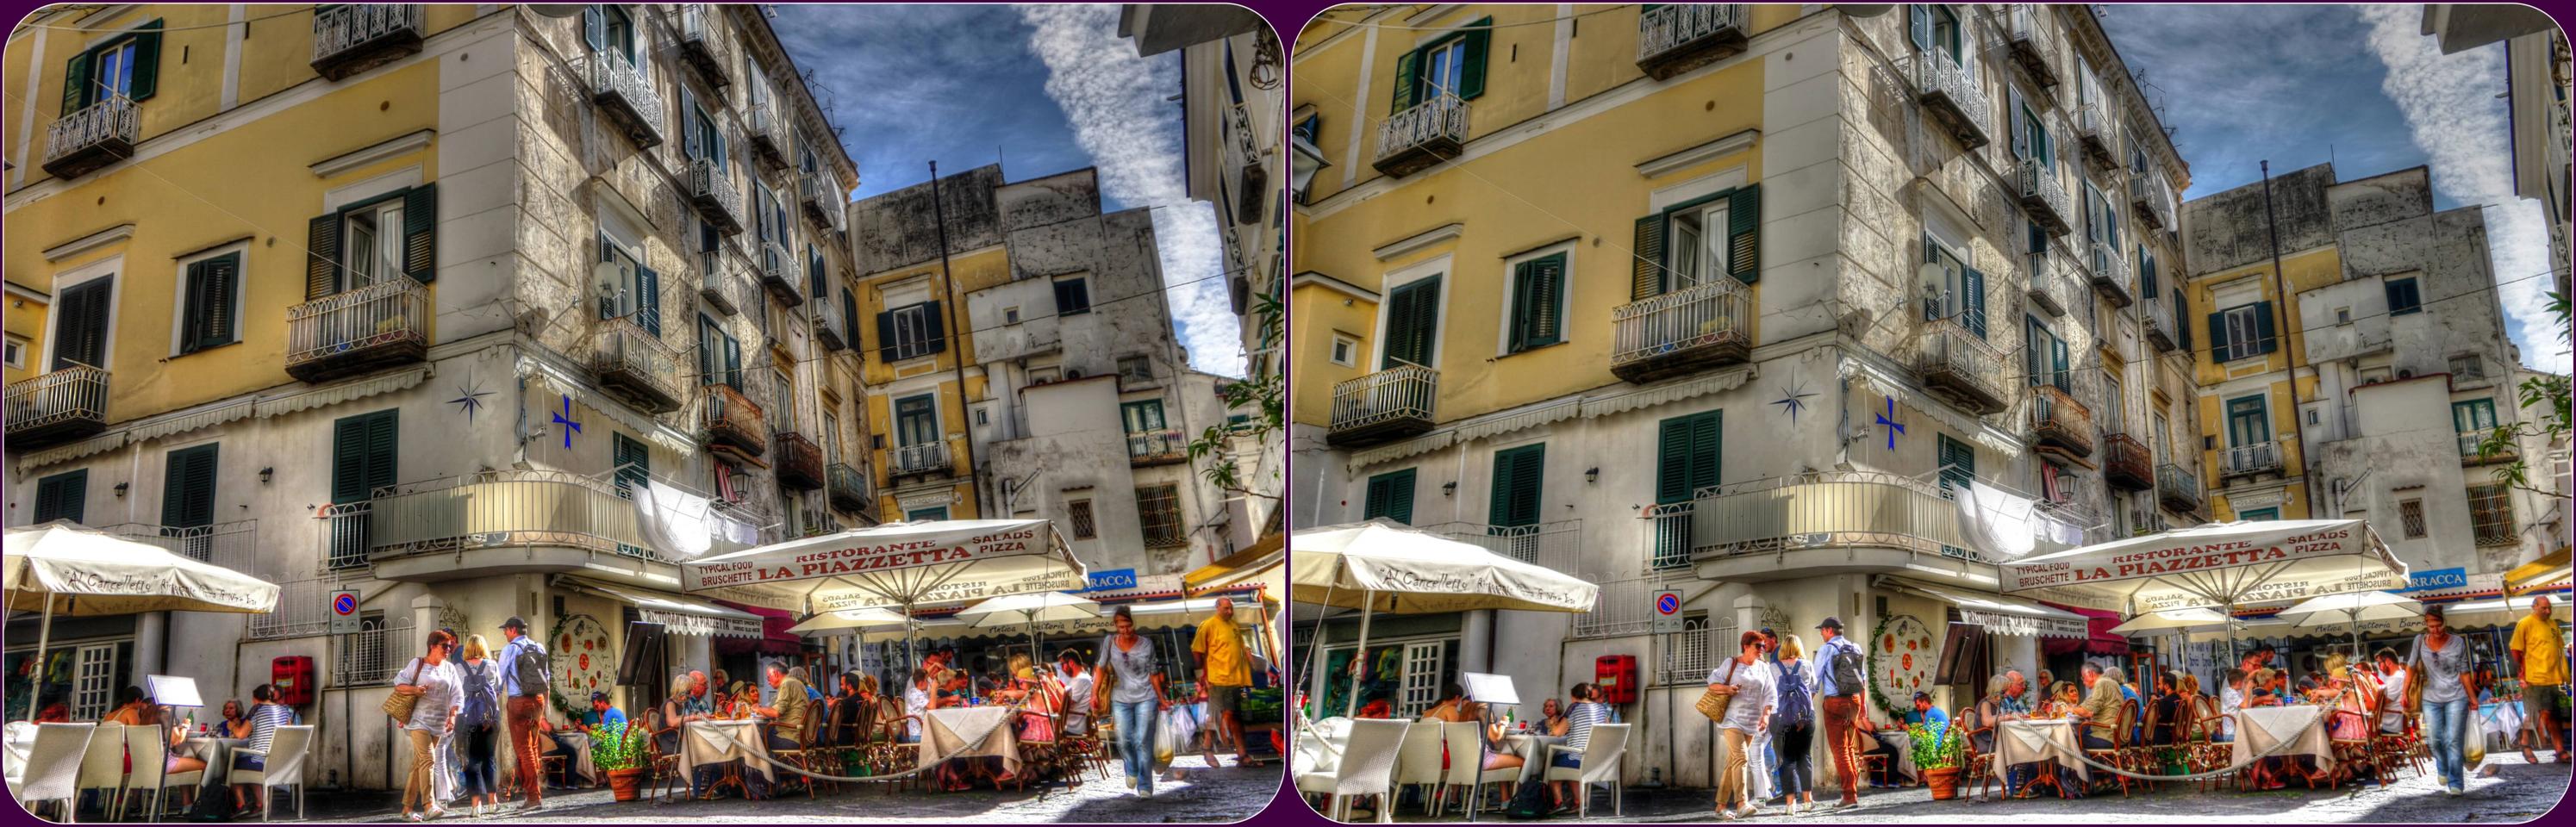 Amalfi Piazza